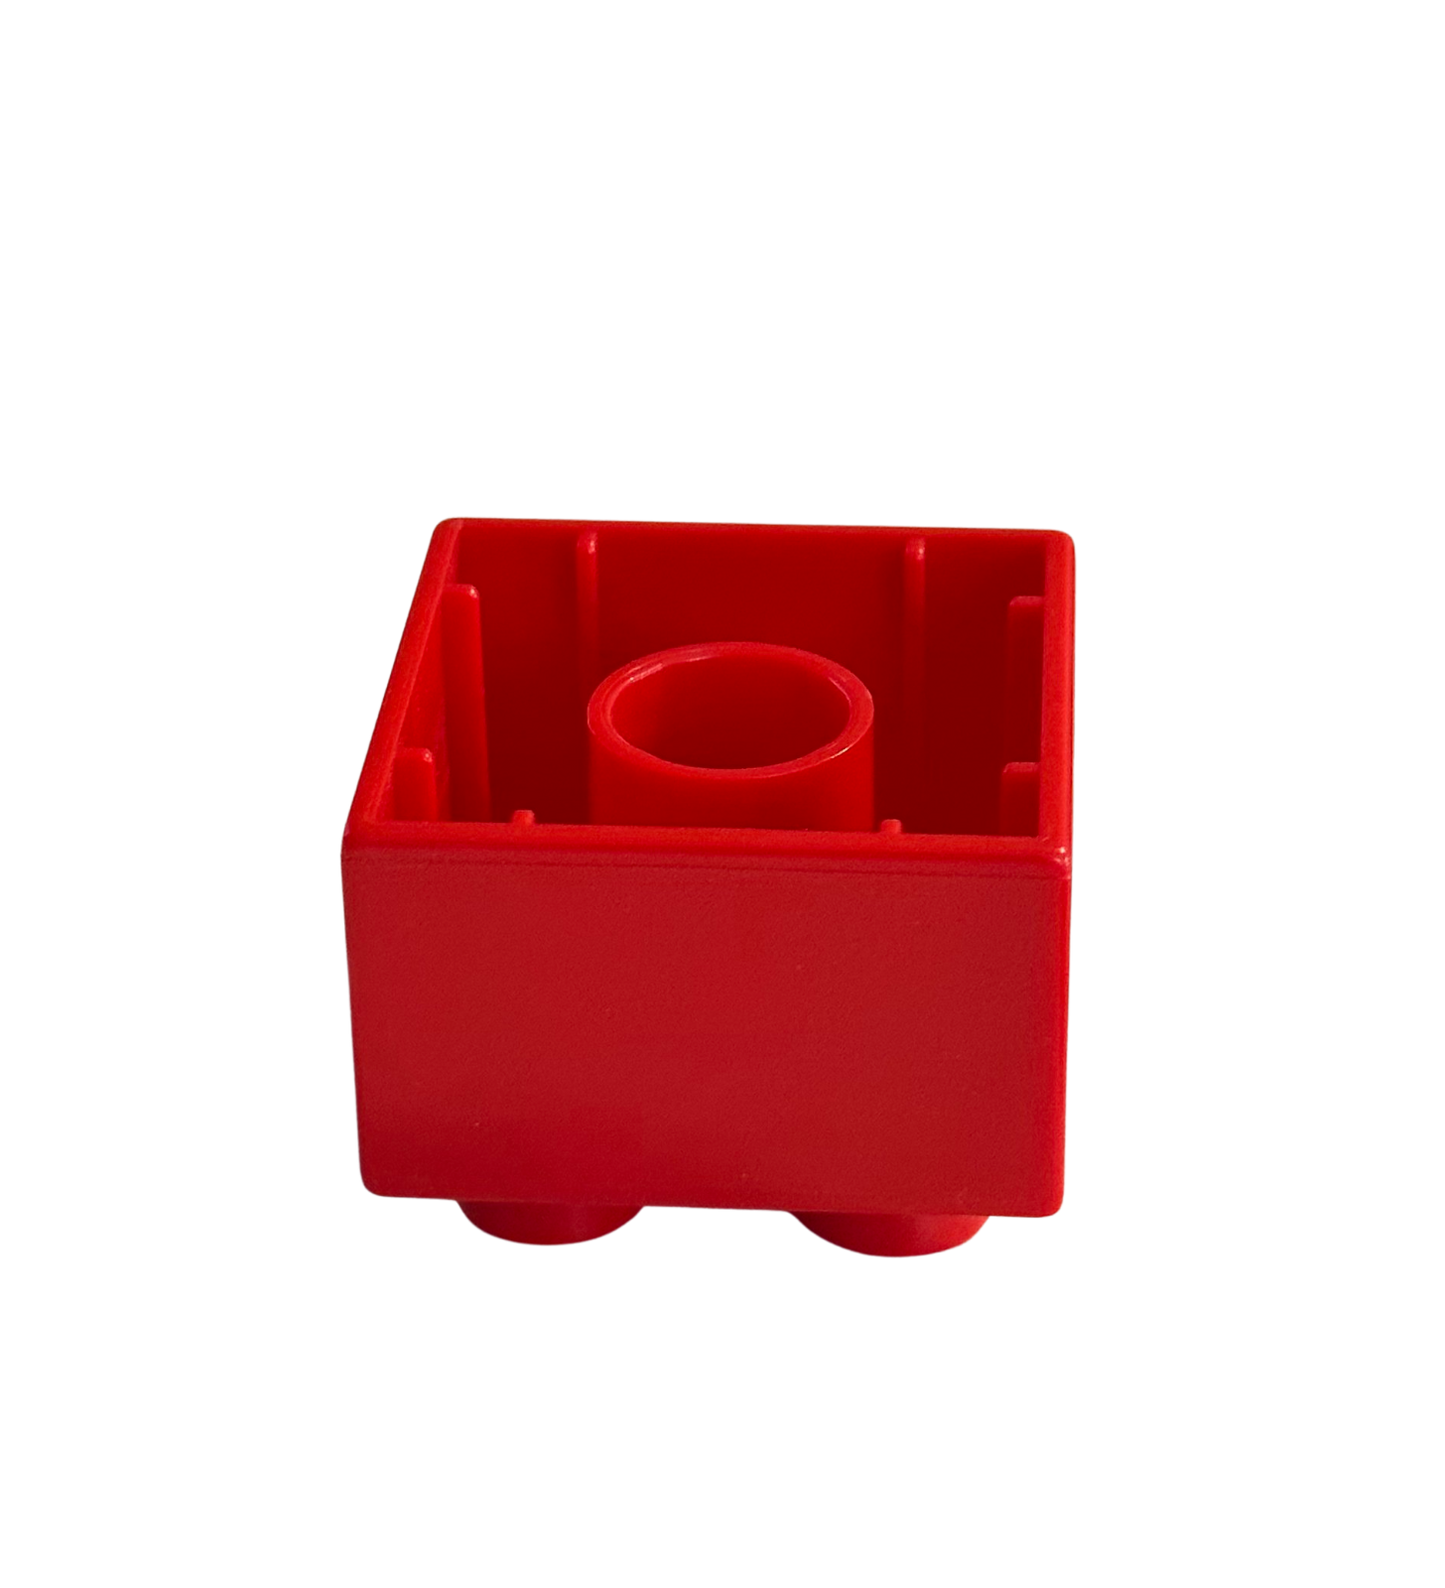 LEGO®DUPLO®2x2 Kamienie Klocki Podstawowe Klocki Czerwony-3437 NOWOŚĆ!  Ilość 50x